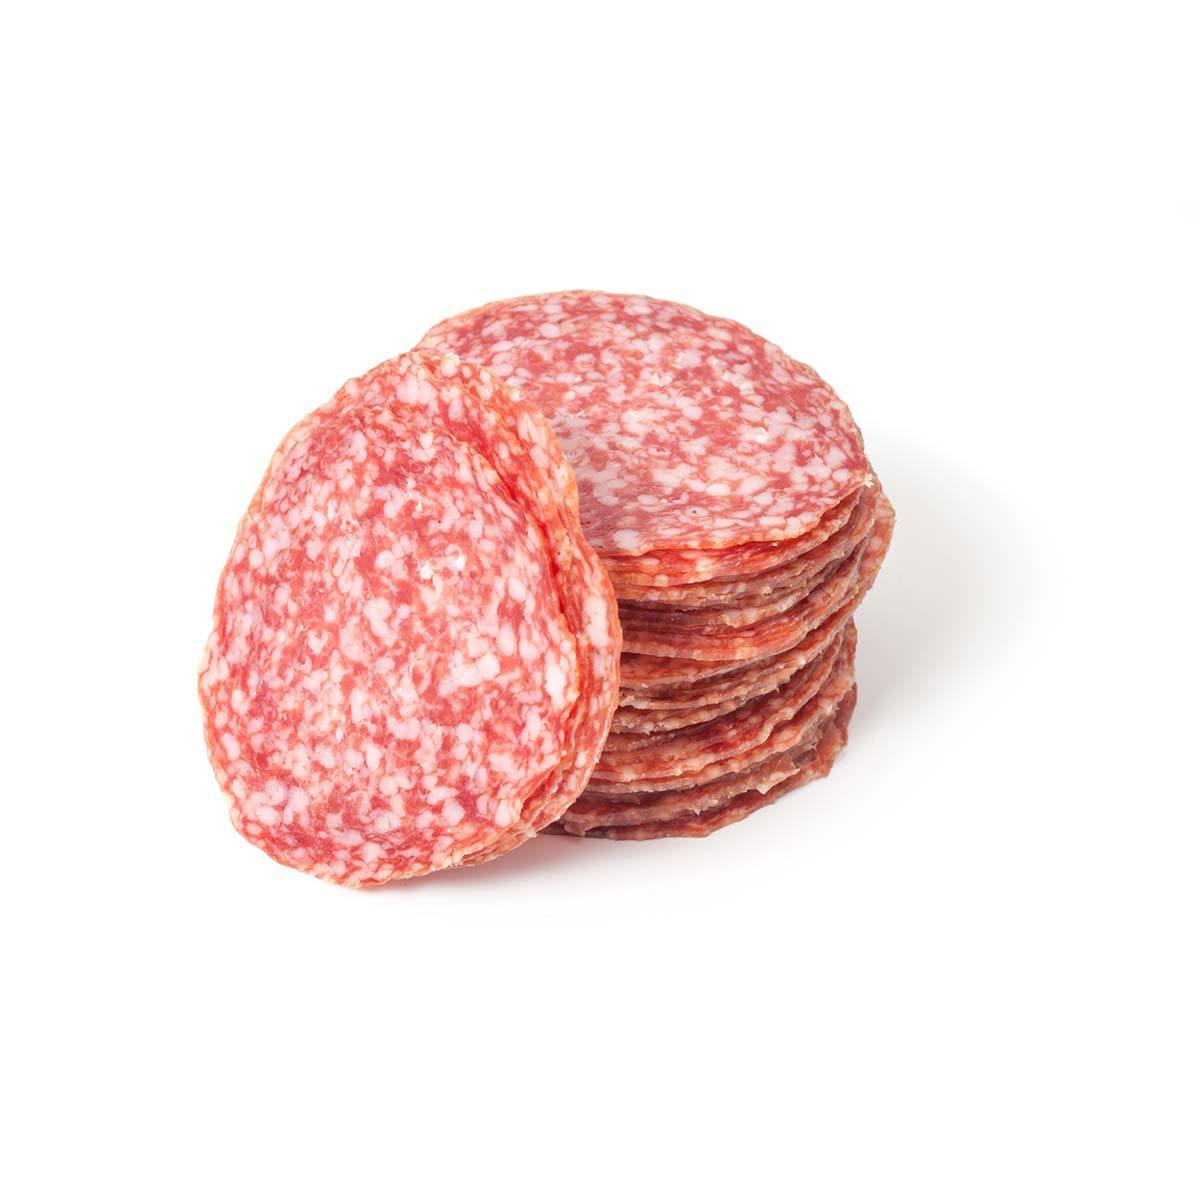 Salami Hausmarke geschnitten 100g Packung - küblerGo